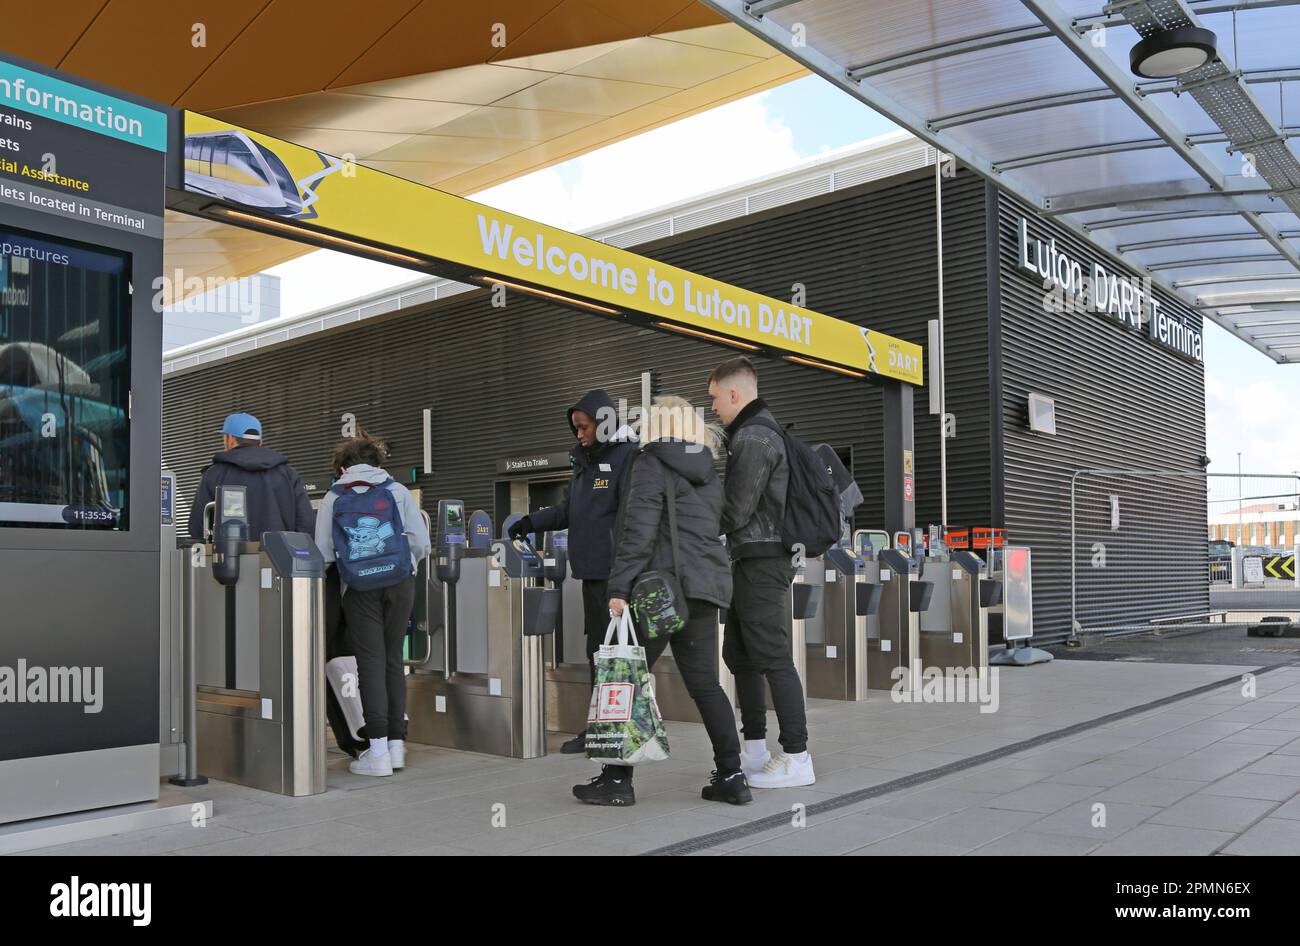 Passagiere nähern sich dem neuen DART-Passagierdurchgangssystem des Flughafens Luton. Verbindet den Flughafen mit dem Bahnhof Luton Airport Parkway. Eröffnung: März 2023 Stockfoto